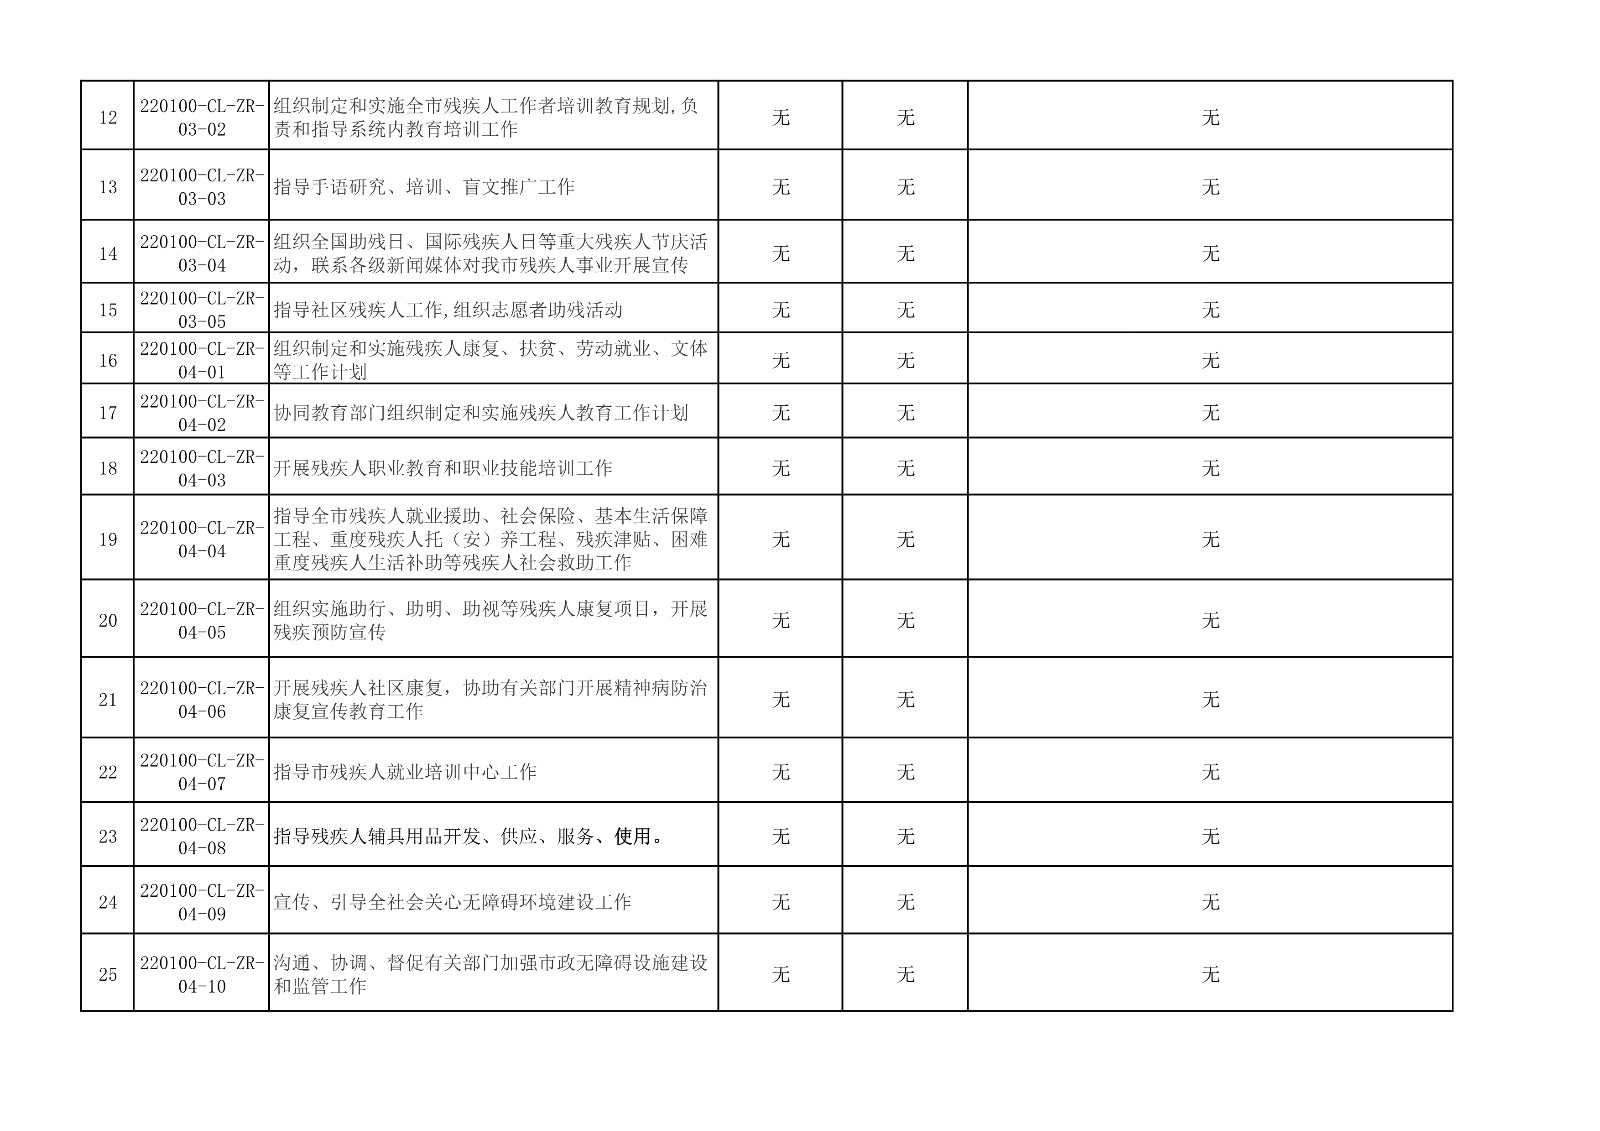 长春市残联行政权力事项审核登记表_2.jpg